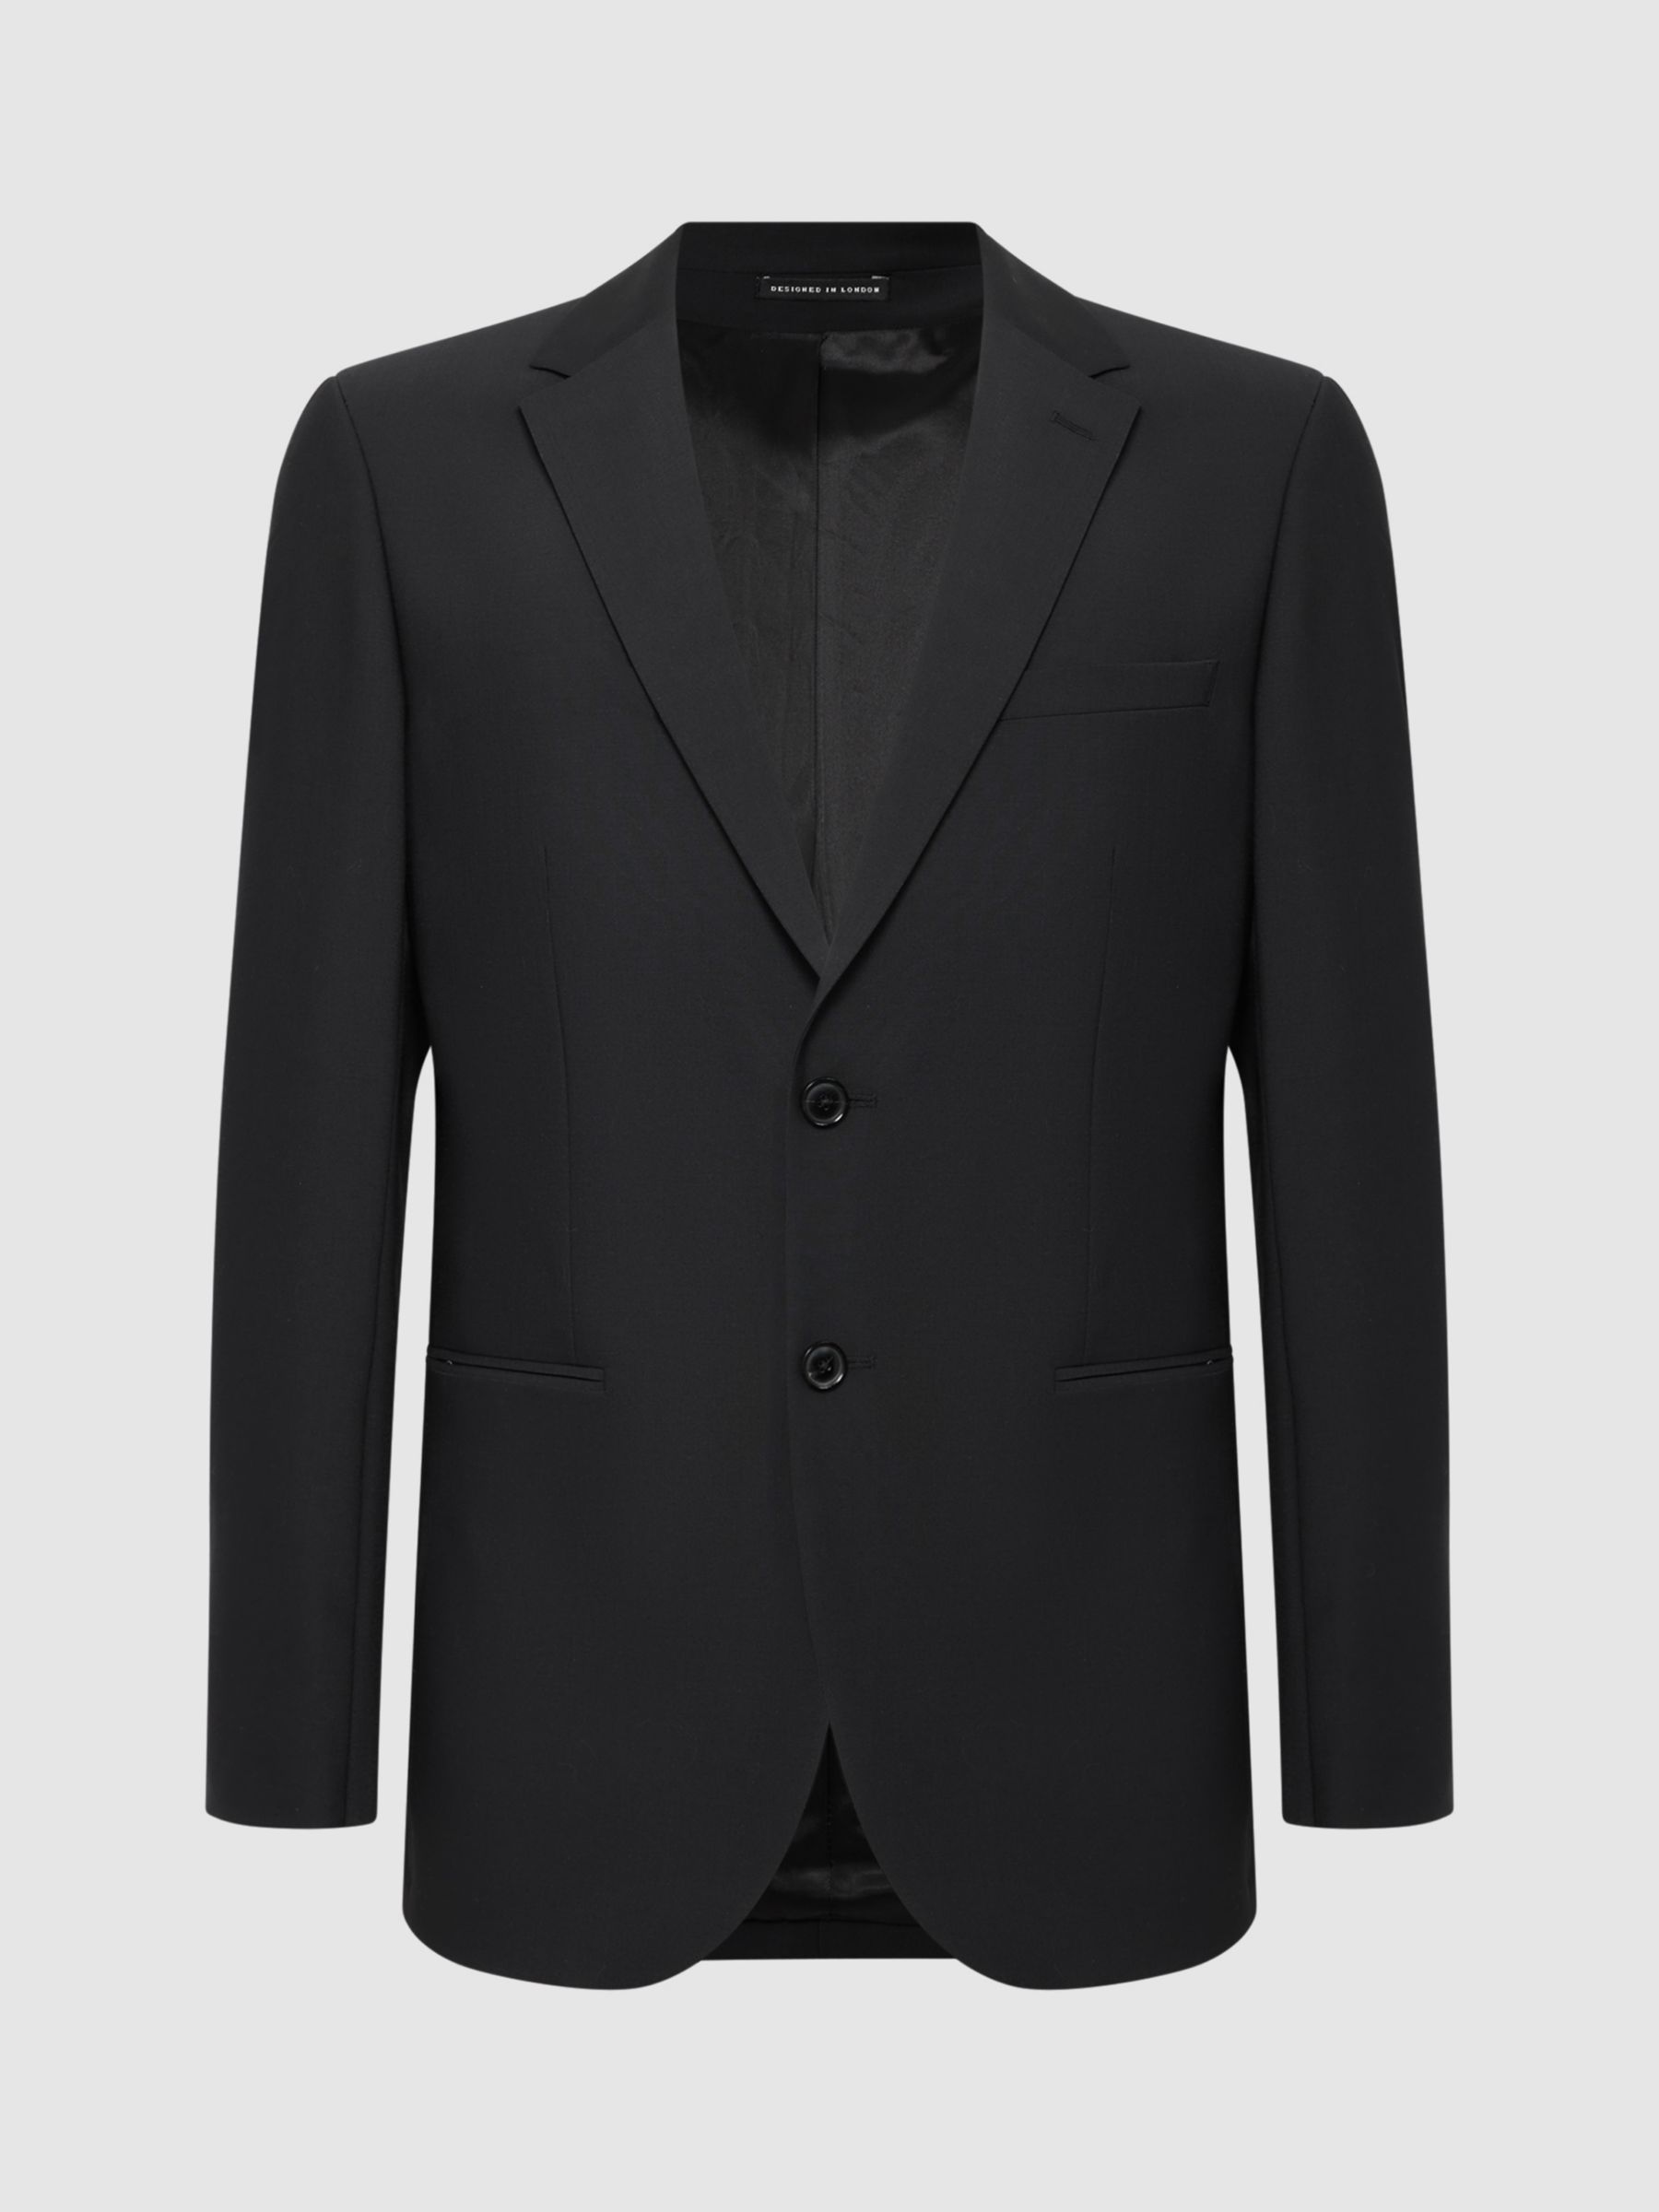 Buy Reiss Hope Wool Blend Suit Jacket Online at johnlewis.com